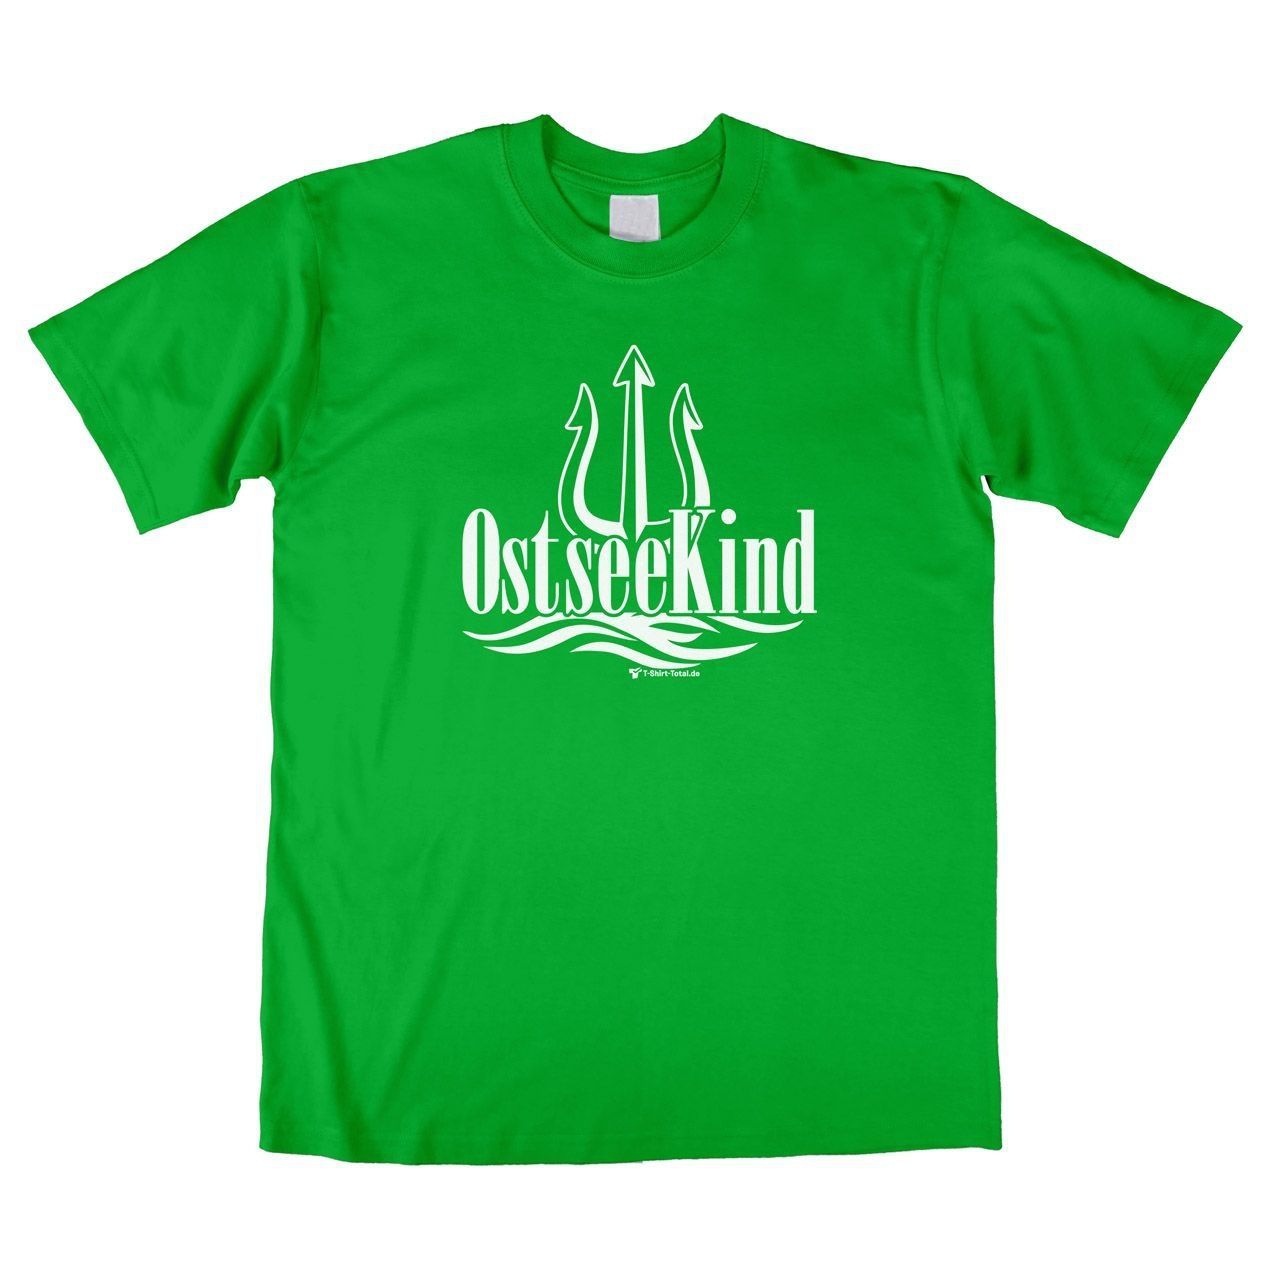 Ostsee Kind (für Erwachsene) Unisex T-Shirt grün Large